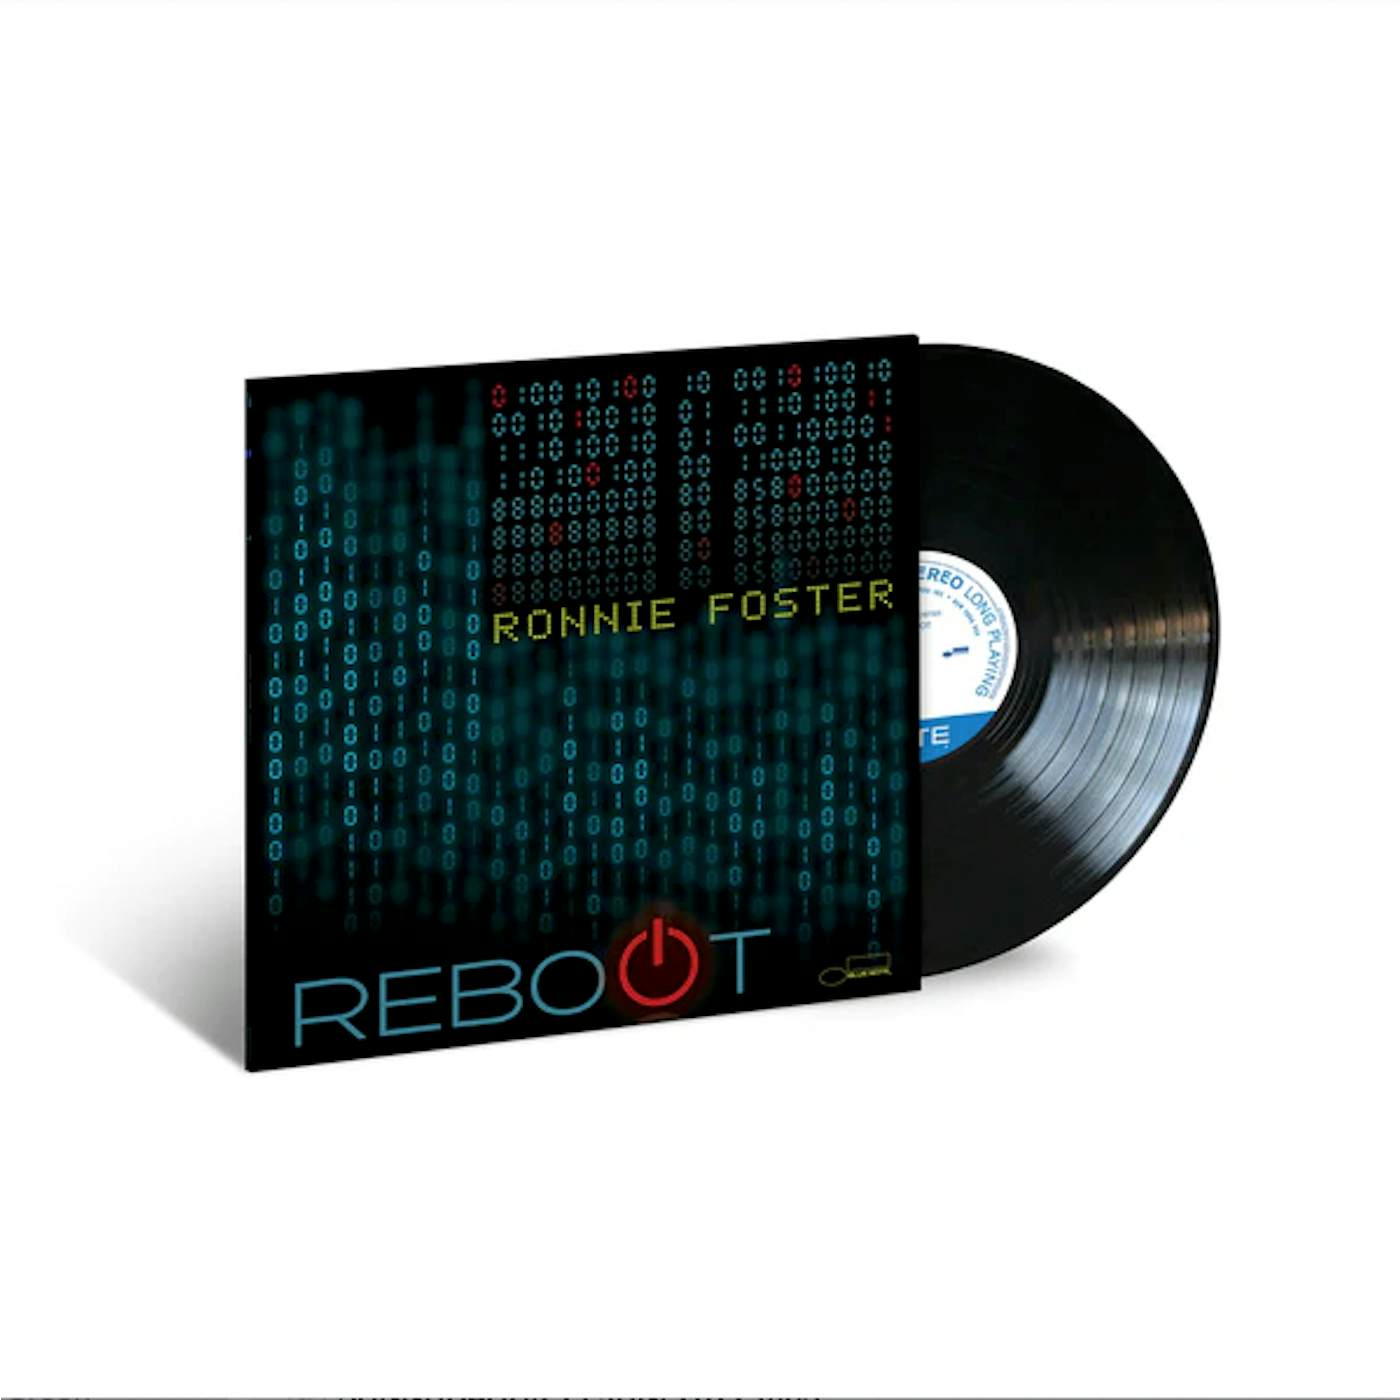 Ronnie Foster - Reboot (Vinyl)